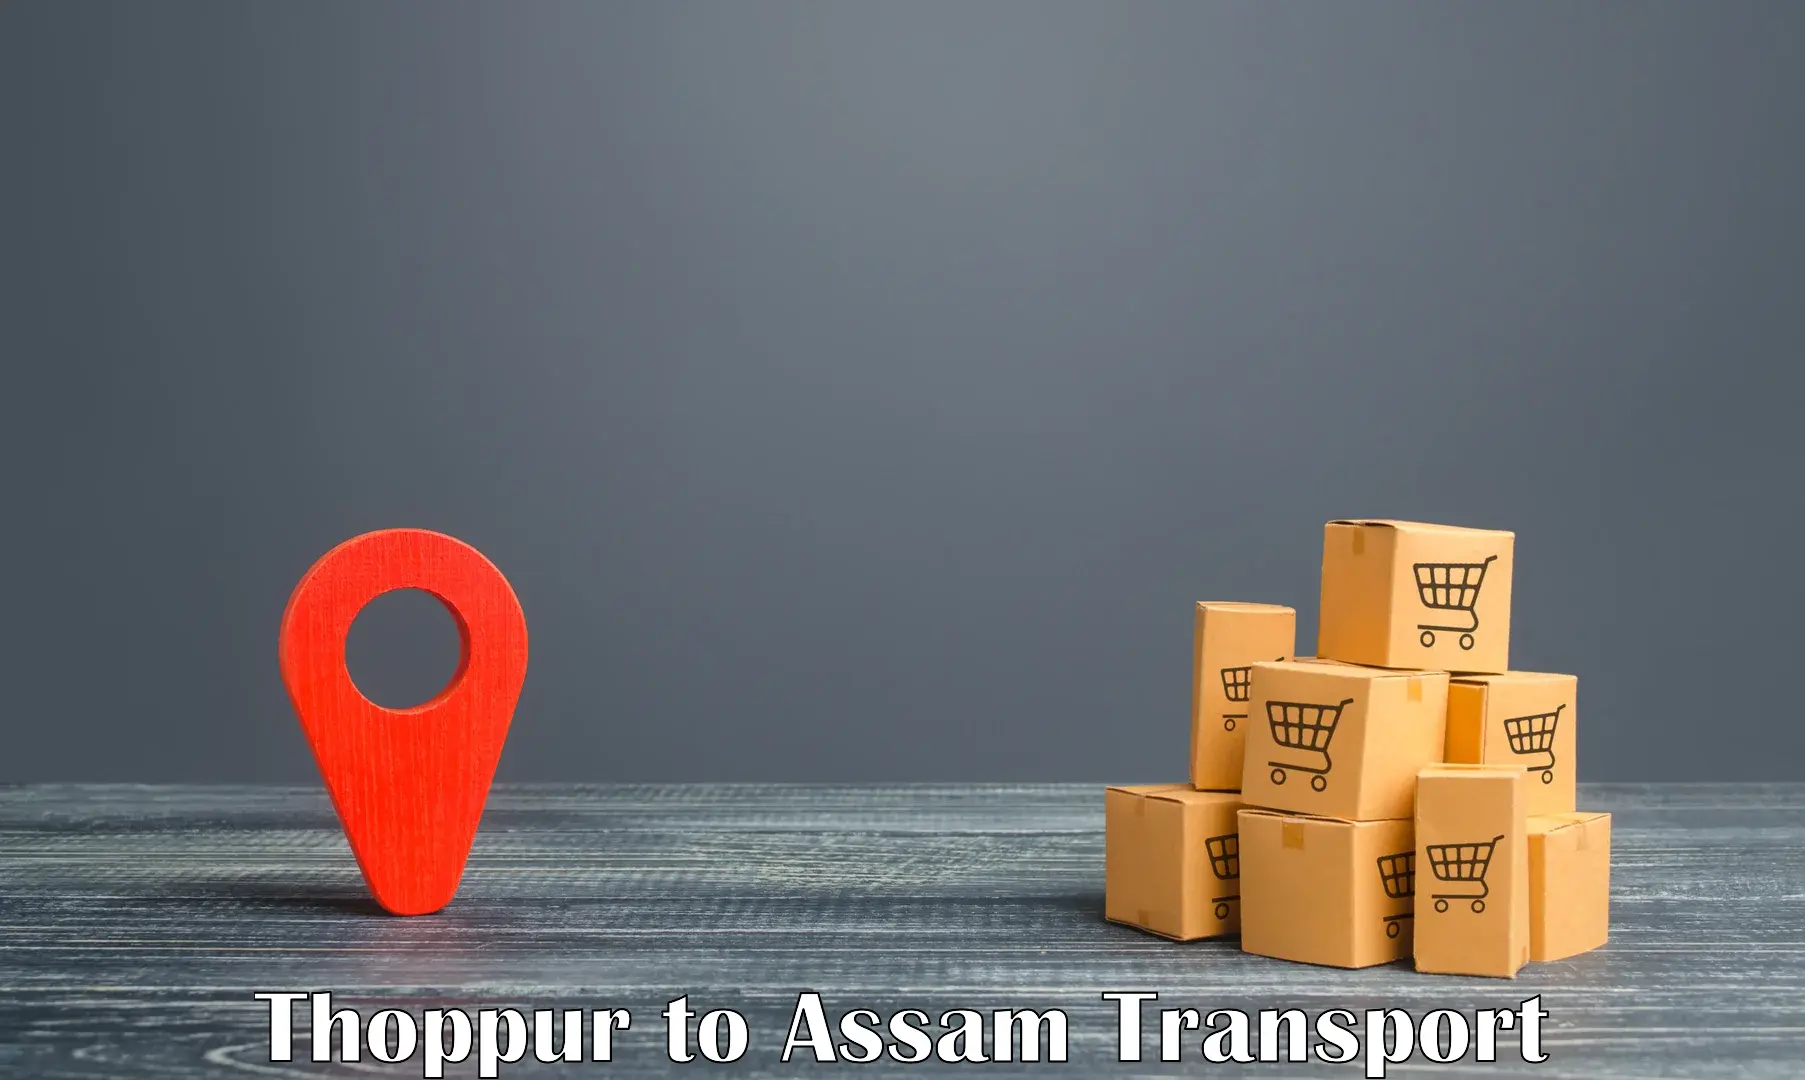 Nearest transport service Thoppur to Bijni